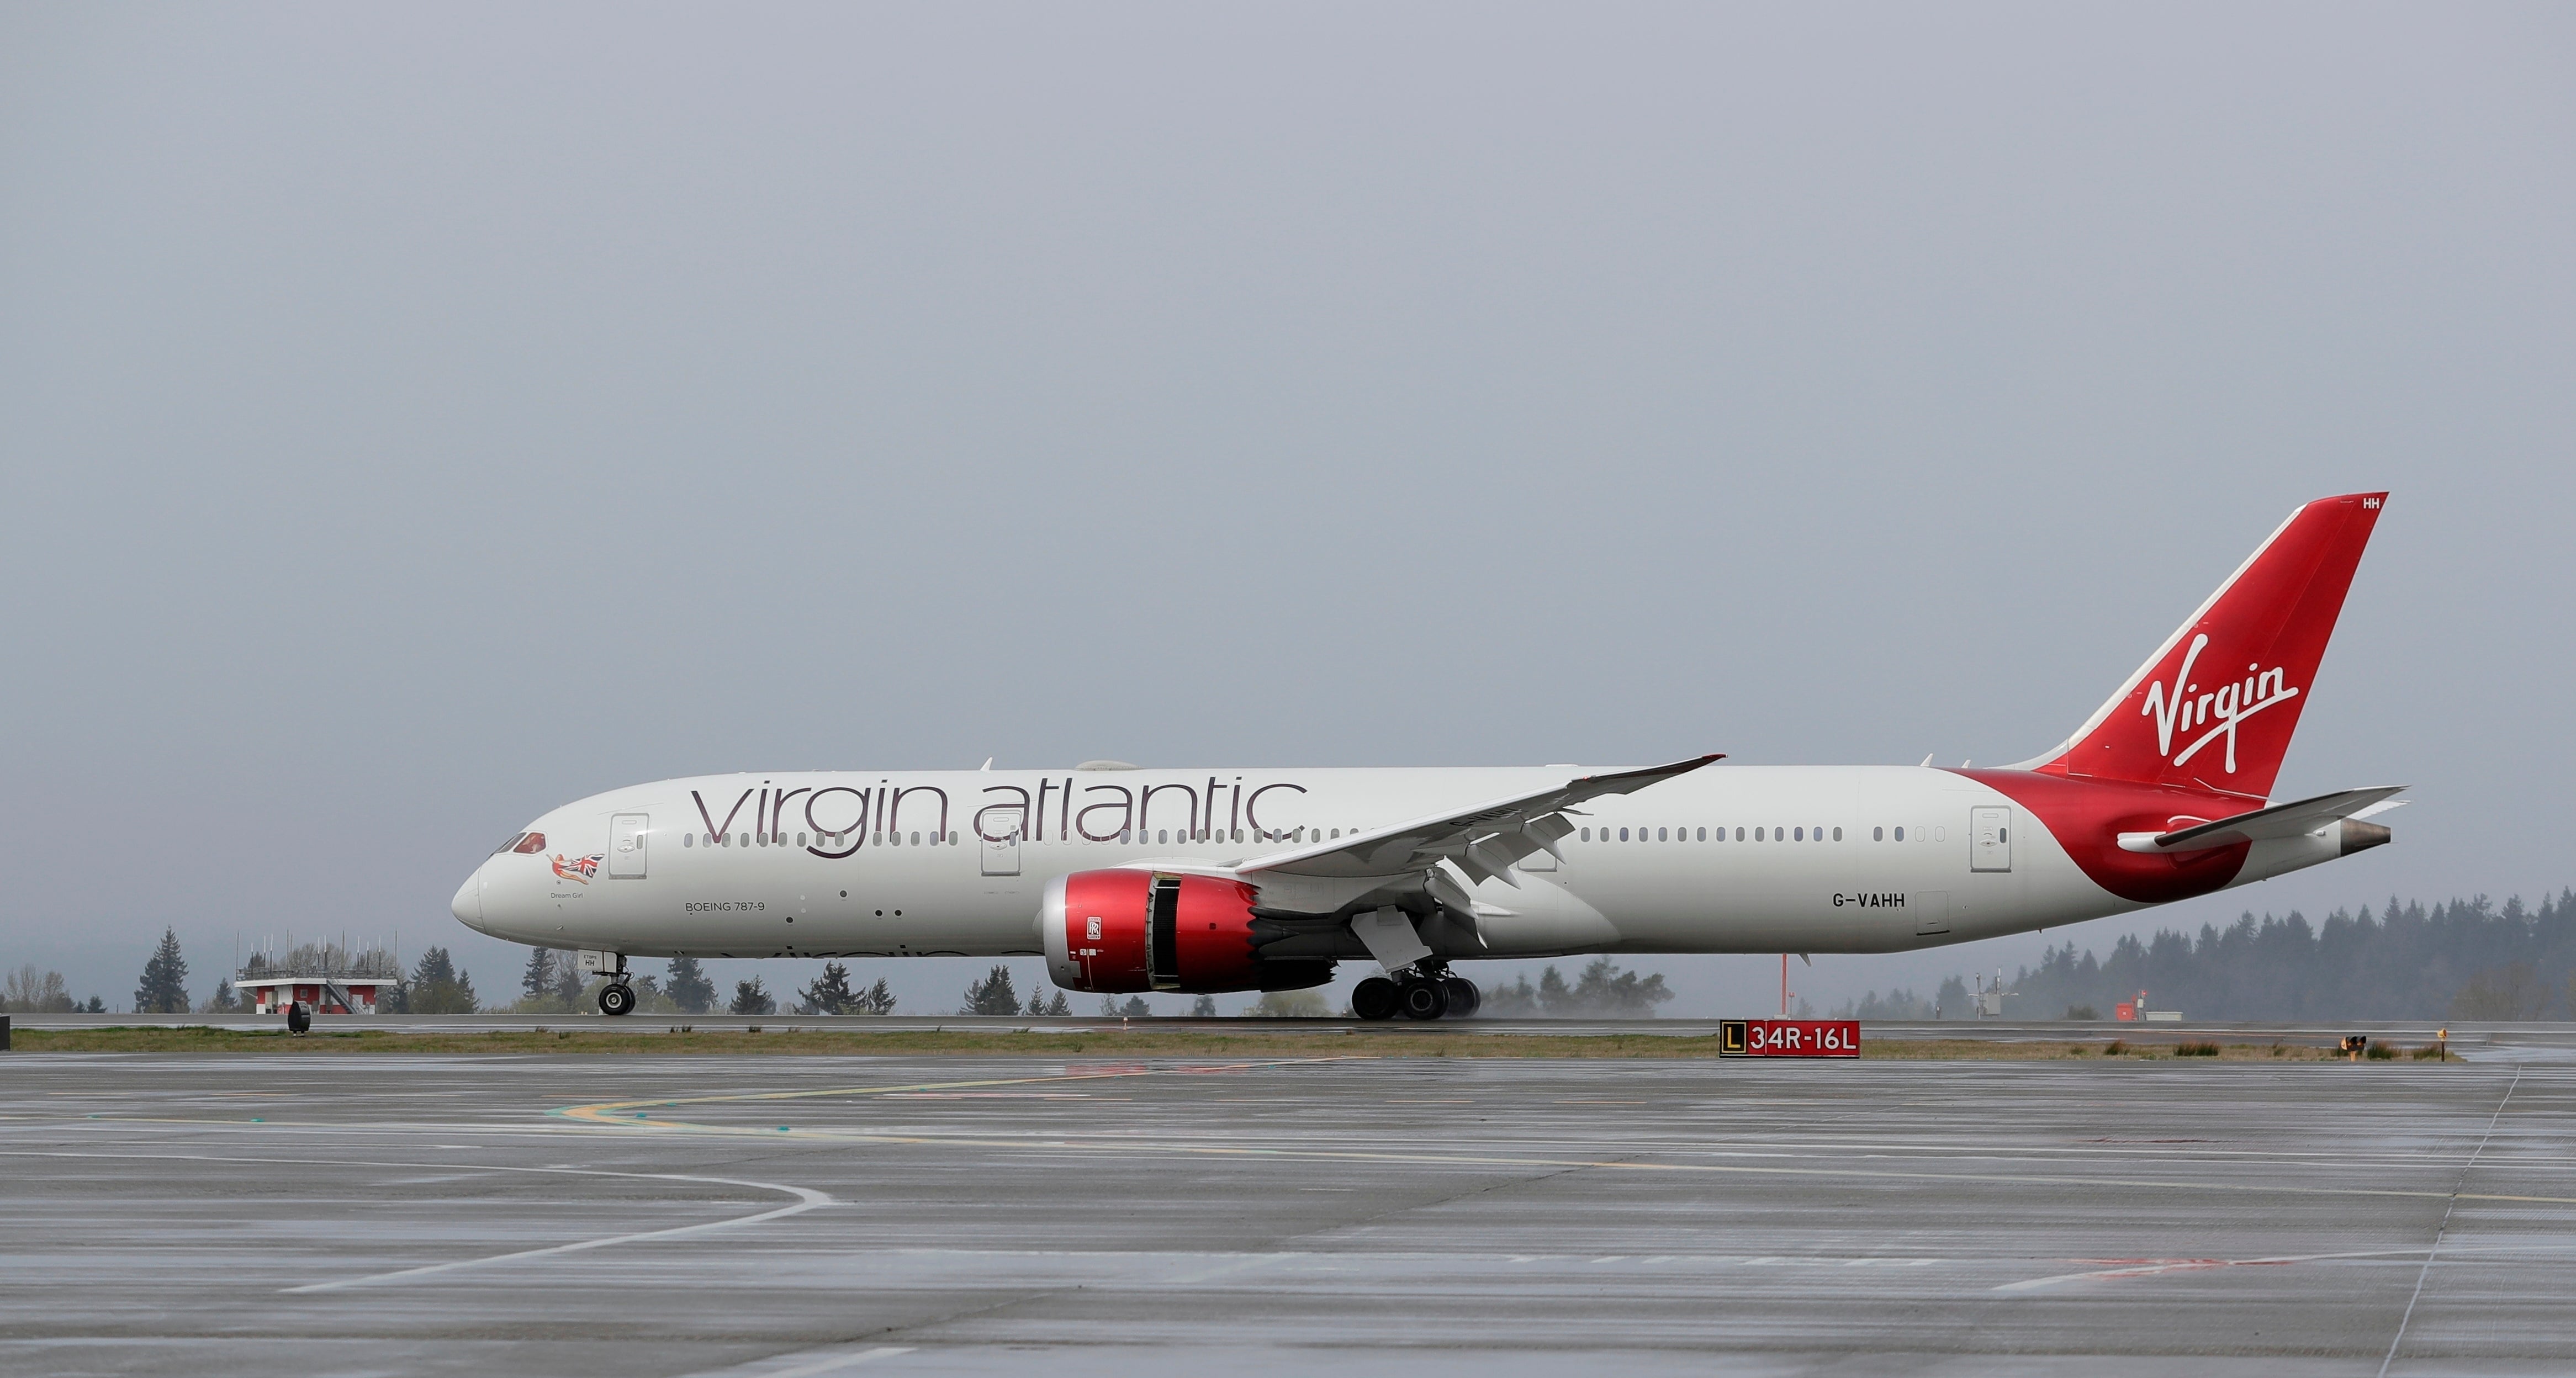 Britain Virgin Atlantic